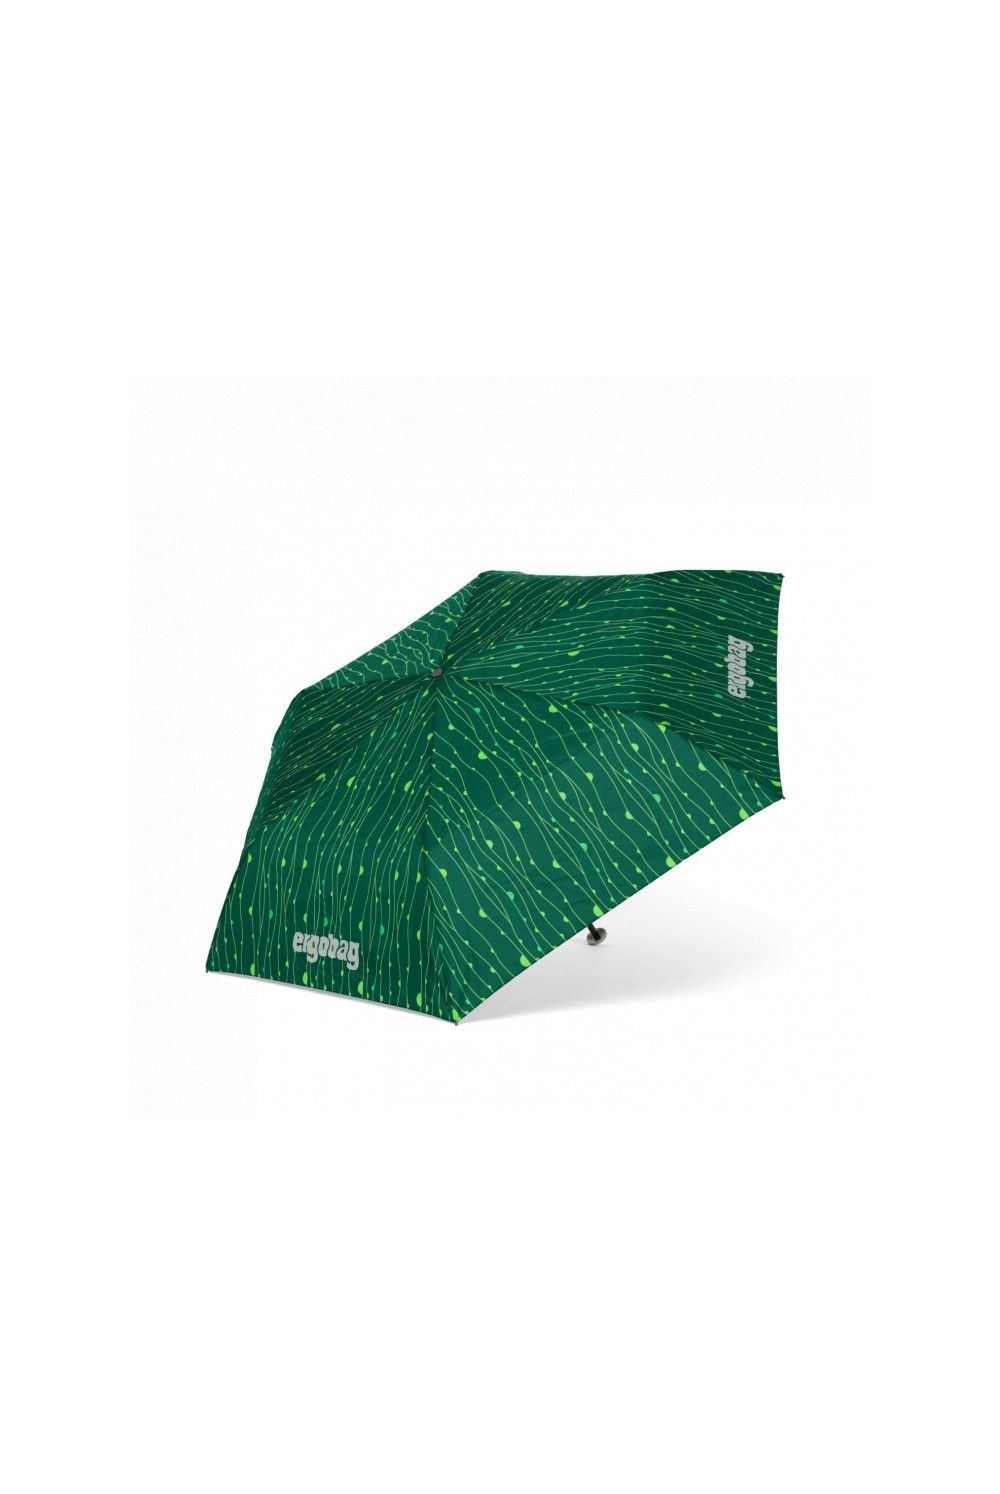 Ergobag Regenschirm RambazamBär